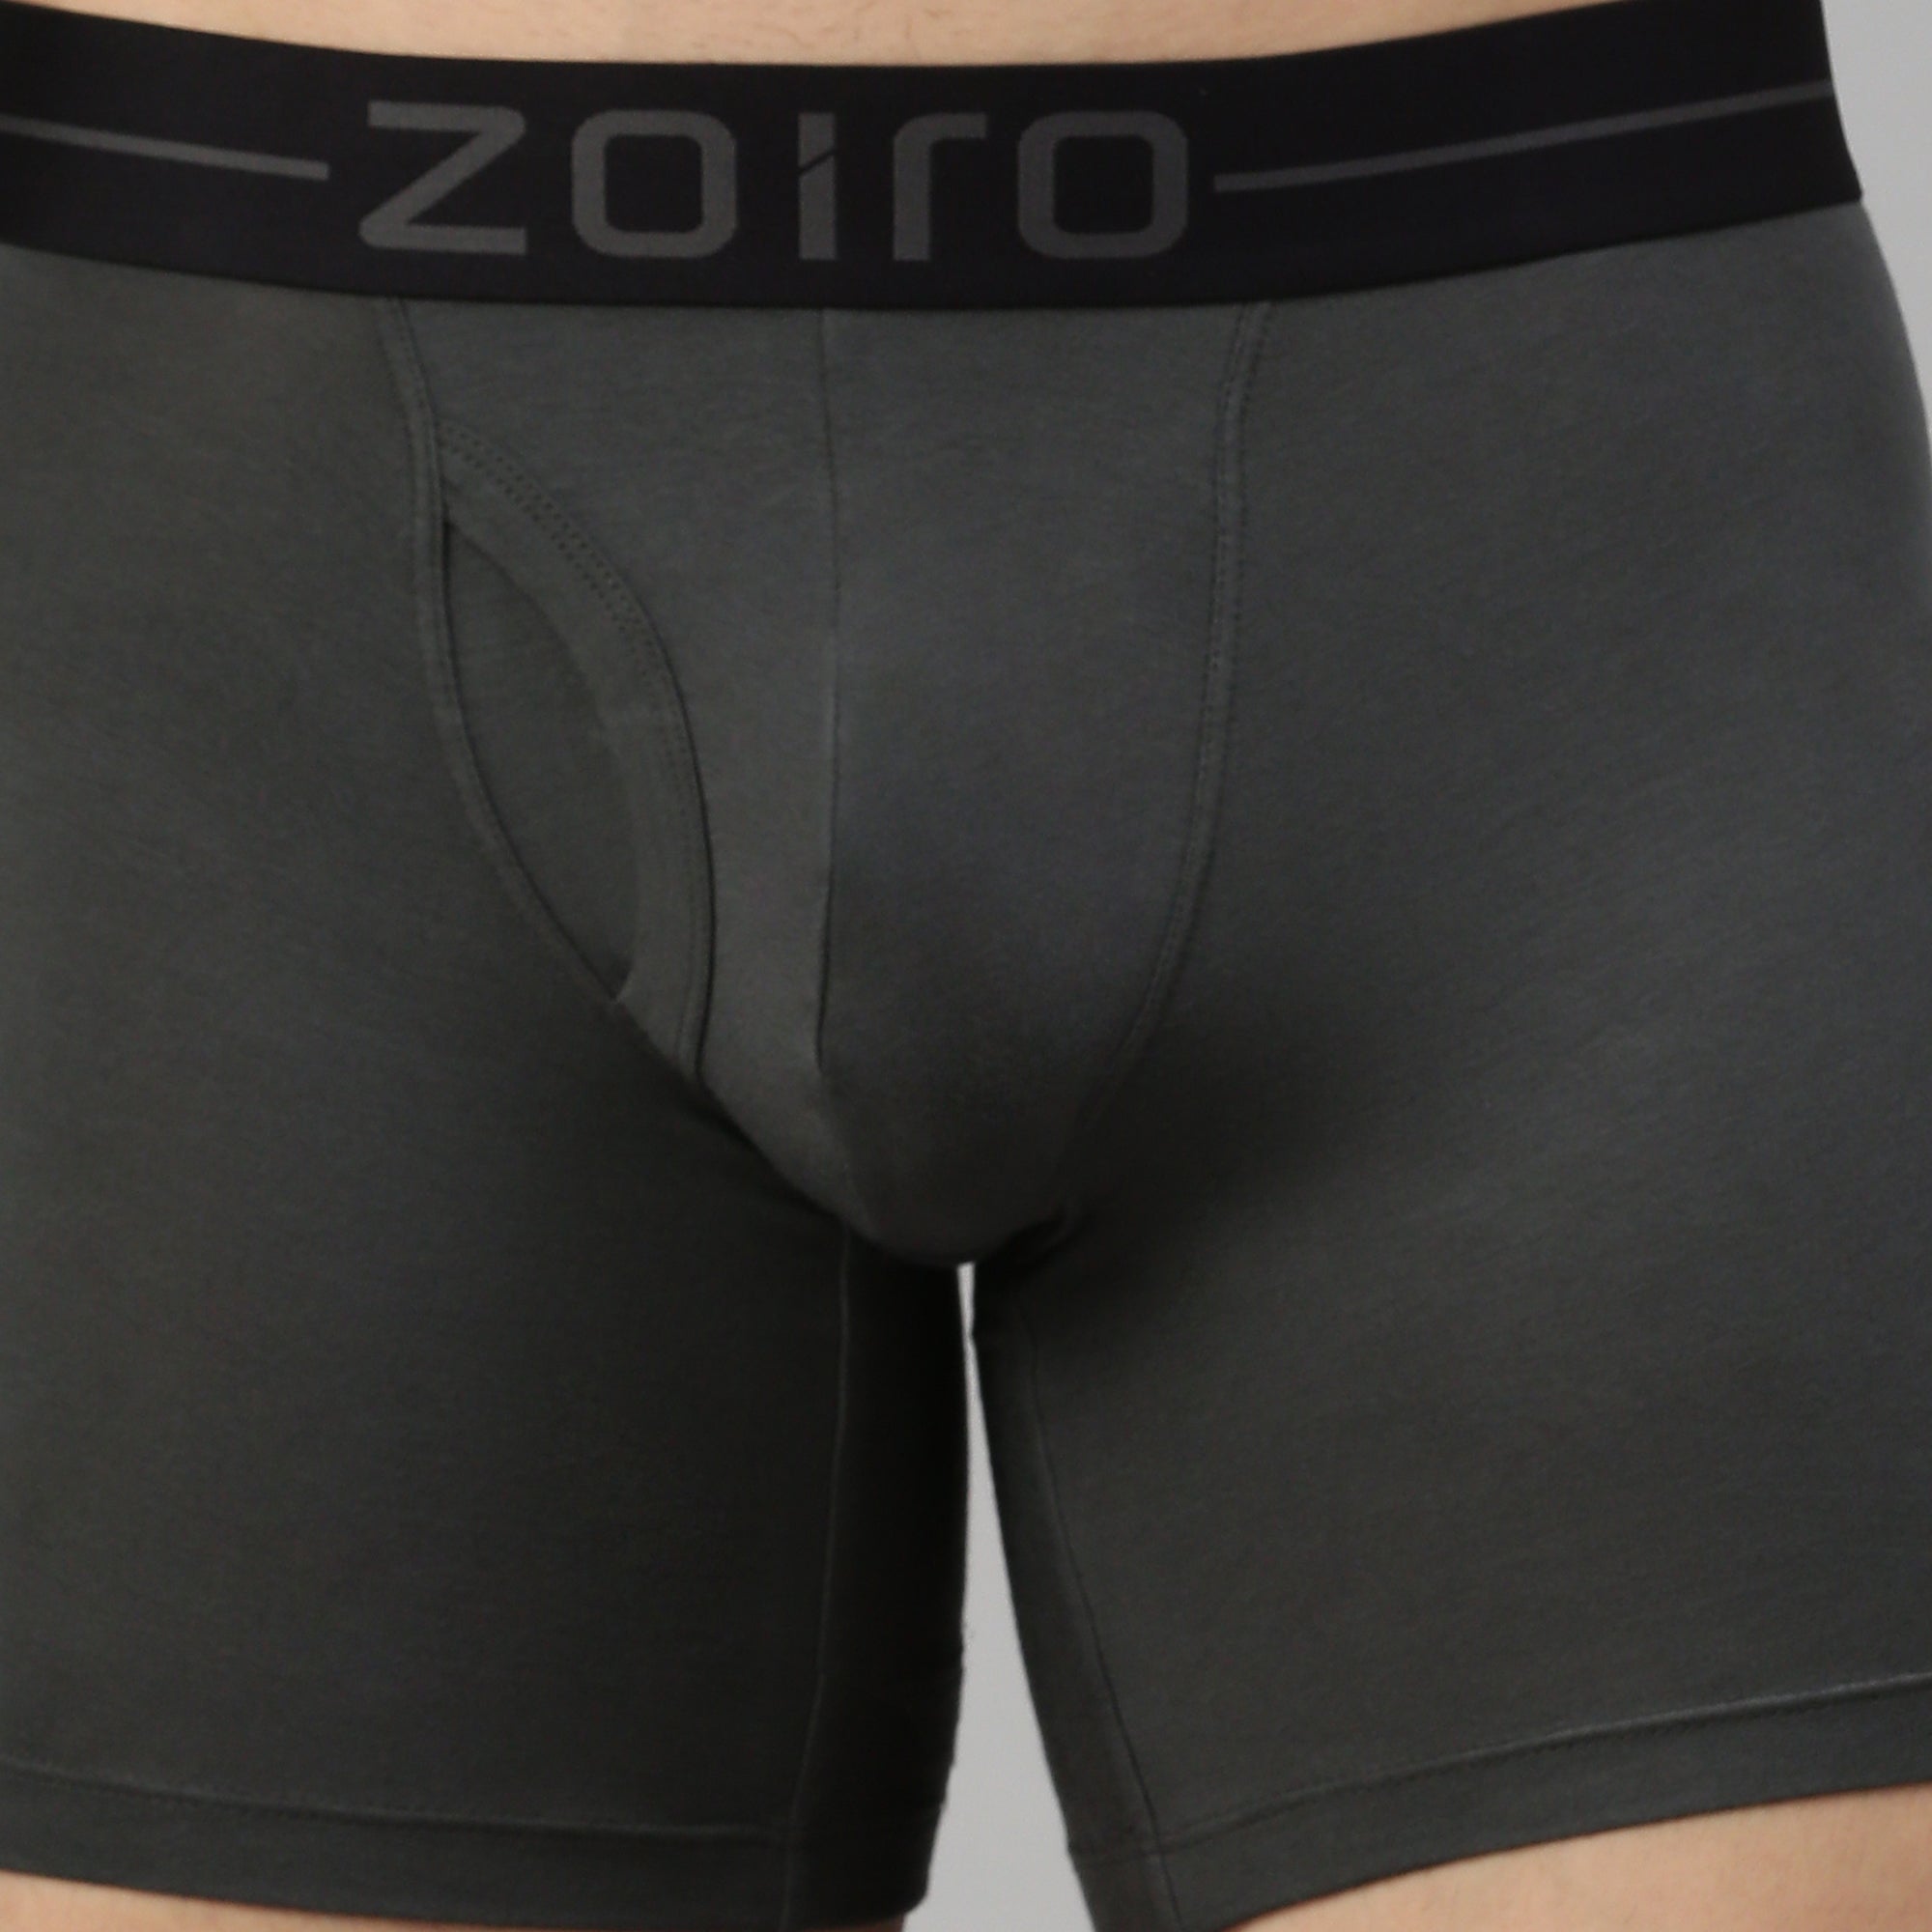 Zoiro Men&#39;s Modal Softs Solid Long Trunk - Steel Grey